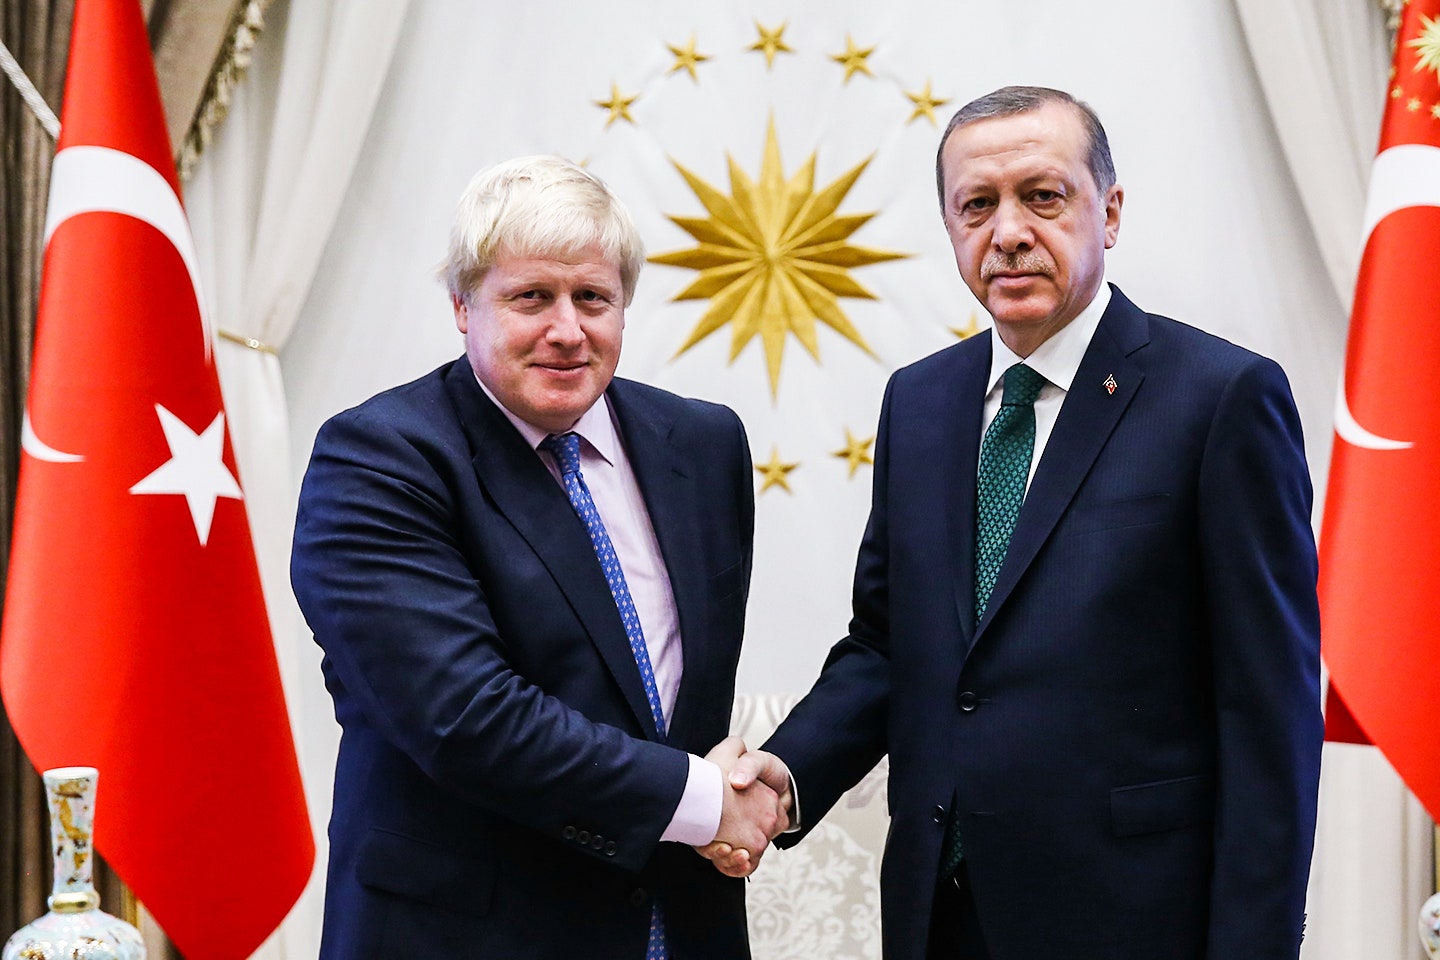 Cumhurbaşkanı Erdoğan İngiltere Başbakanı ile görüştü